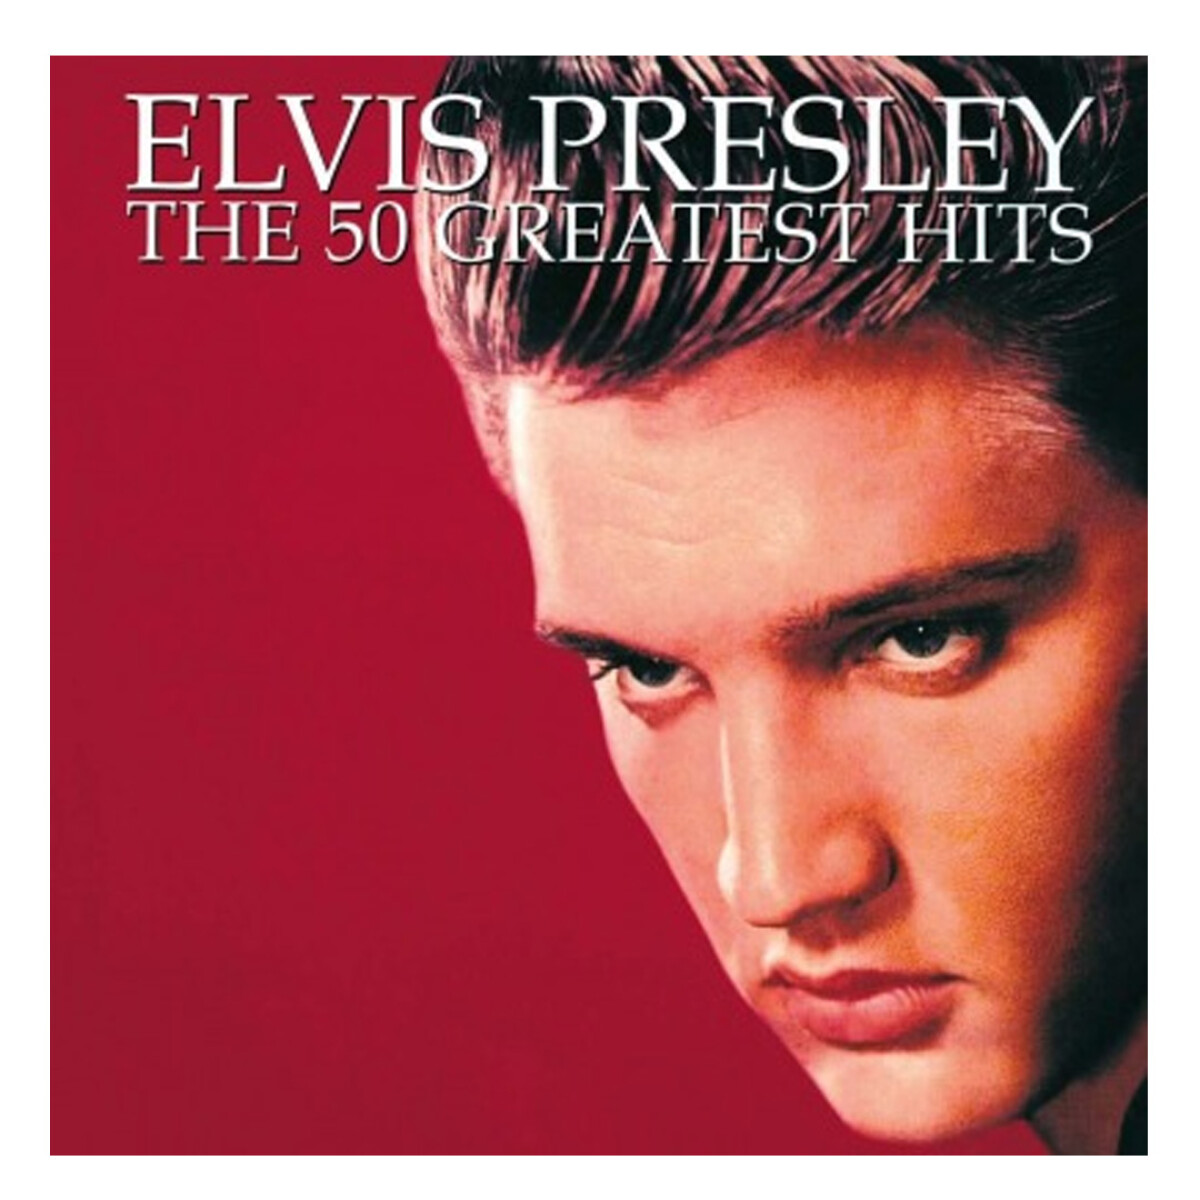 Presley, Elvis - 50 Greatest Hits 